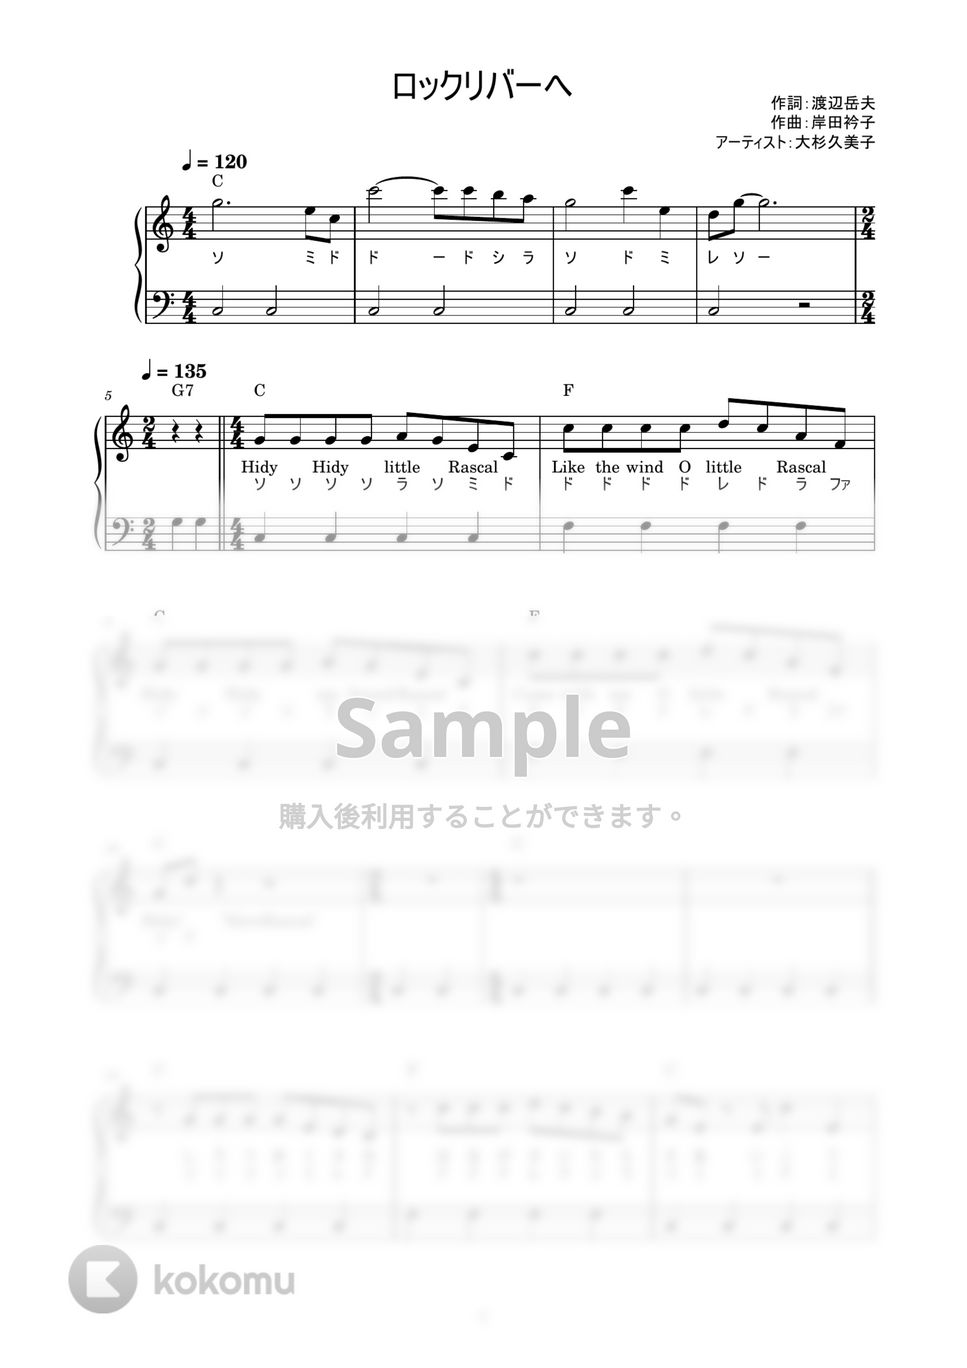 大杉久美子 - ロックリバーへ (かんたん / 歌詞付き / ドレミ付き / 初心者) by piano.tokyo